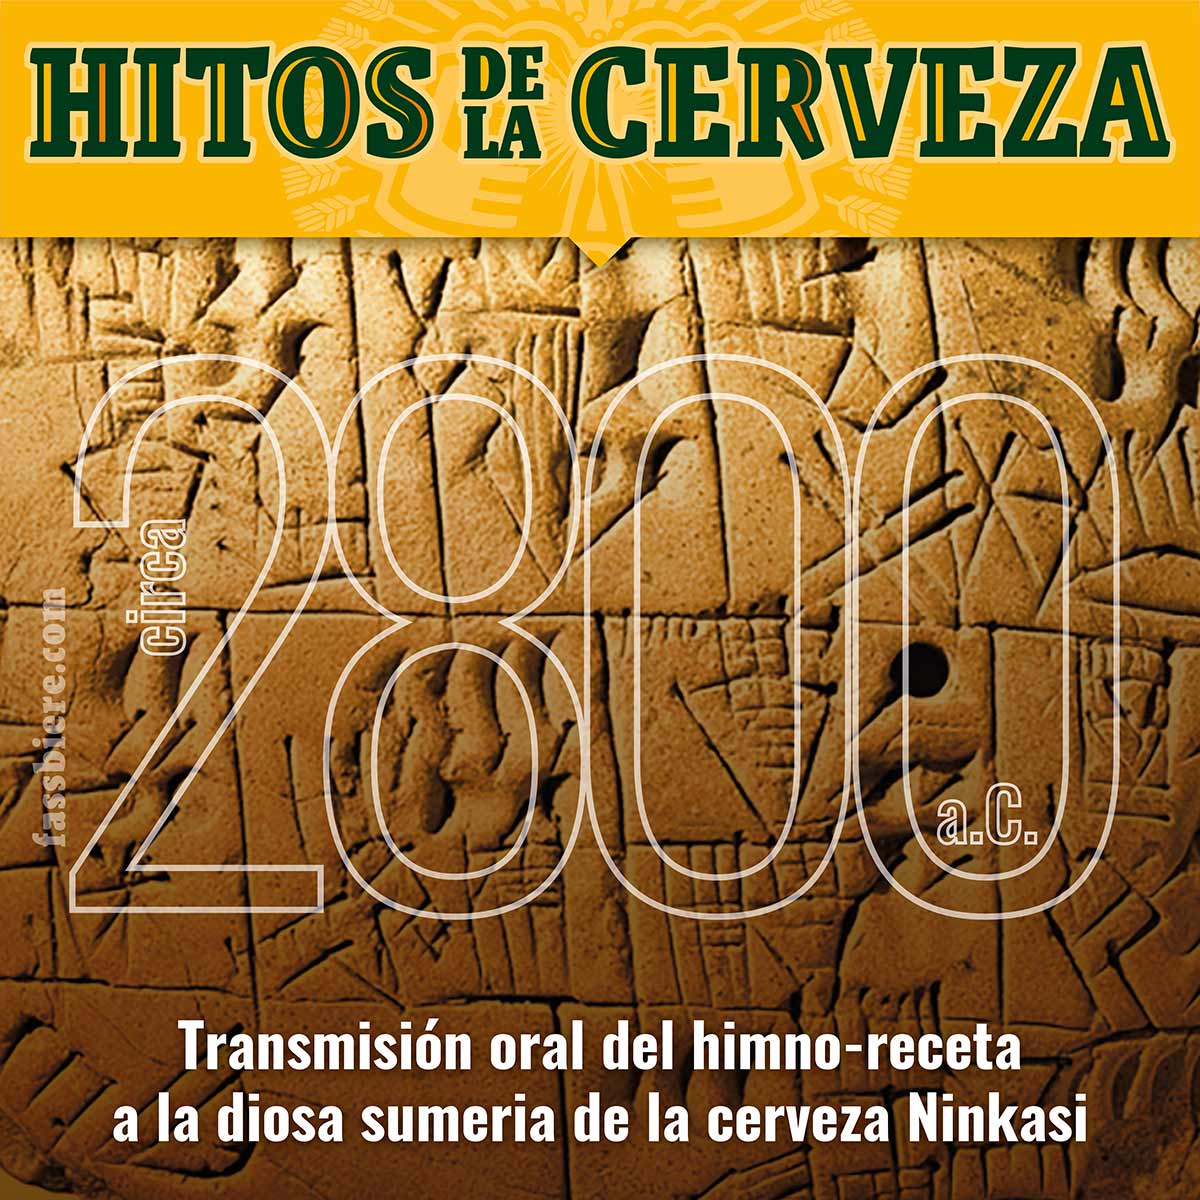 Historia de la cerveza: 2800 a.C., la tradición oral en Sumeria, transmitía la receta para hacer cerveza en forma de un himno a su diosa Ninkasi.